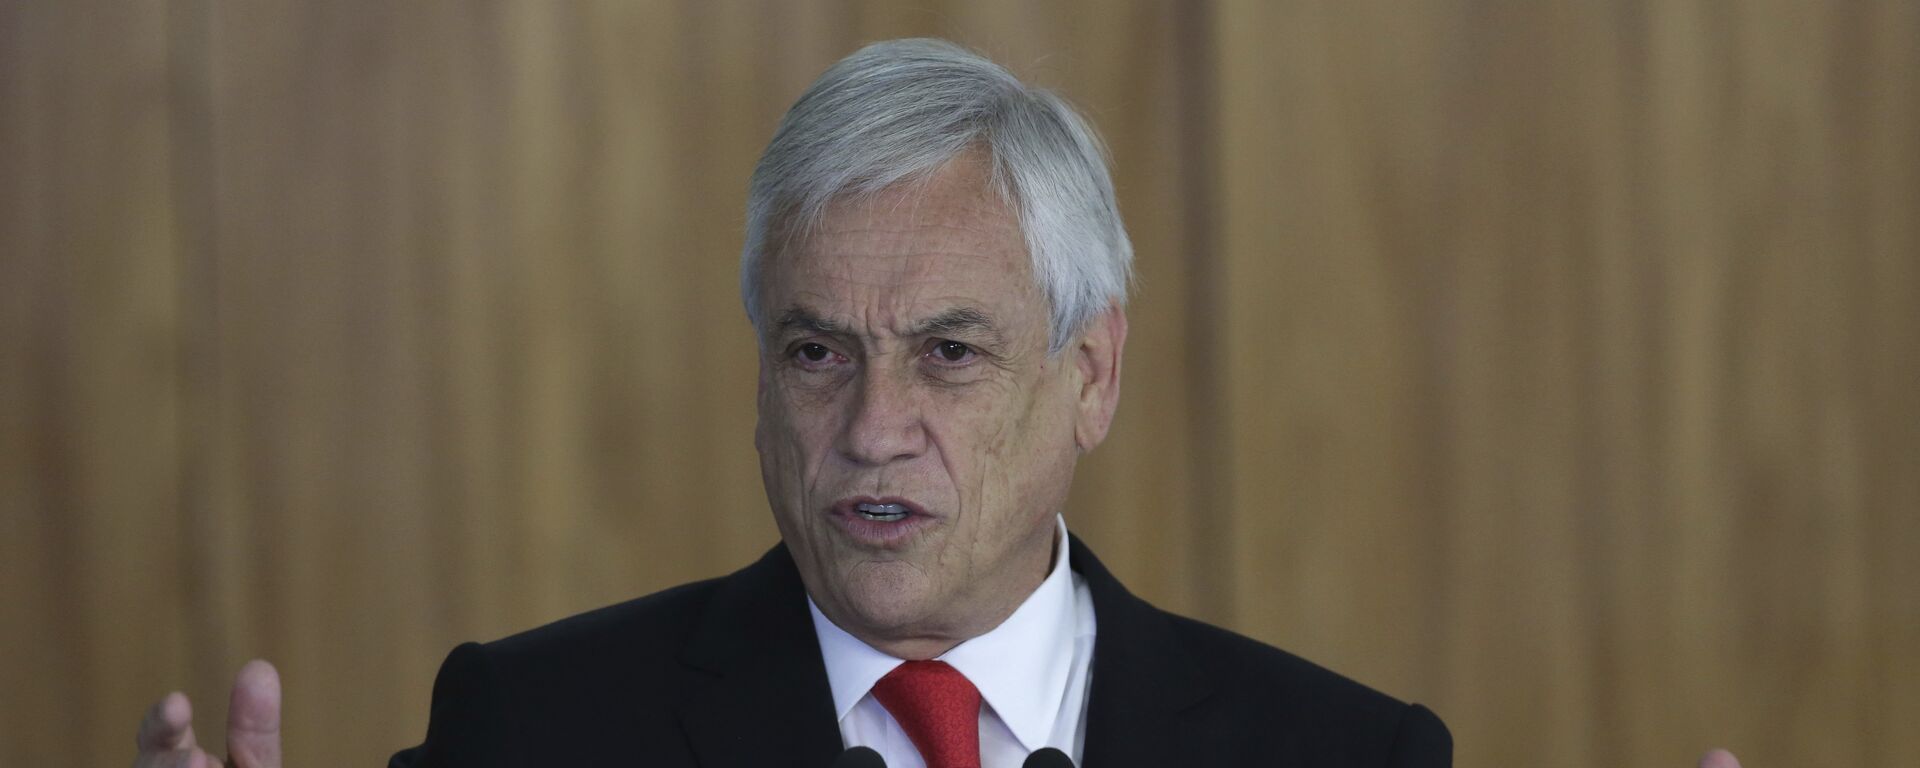 Sebastián Piñera, presidente do Chile, fala durante encontro com o então presidente do Brasil, Michel Temer, em Brasília, no dia 27 de abril de 2018. - Sputnik Brasil, 1920, 25.05.2020